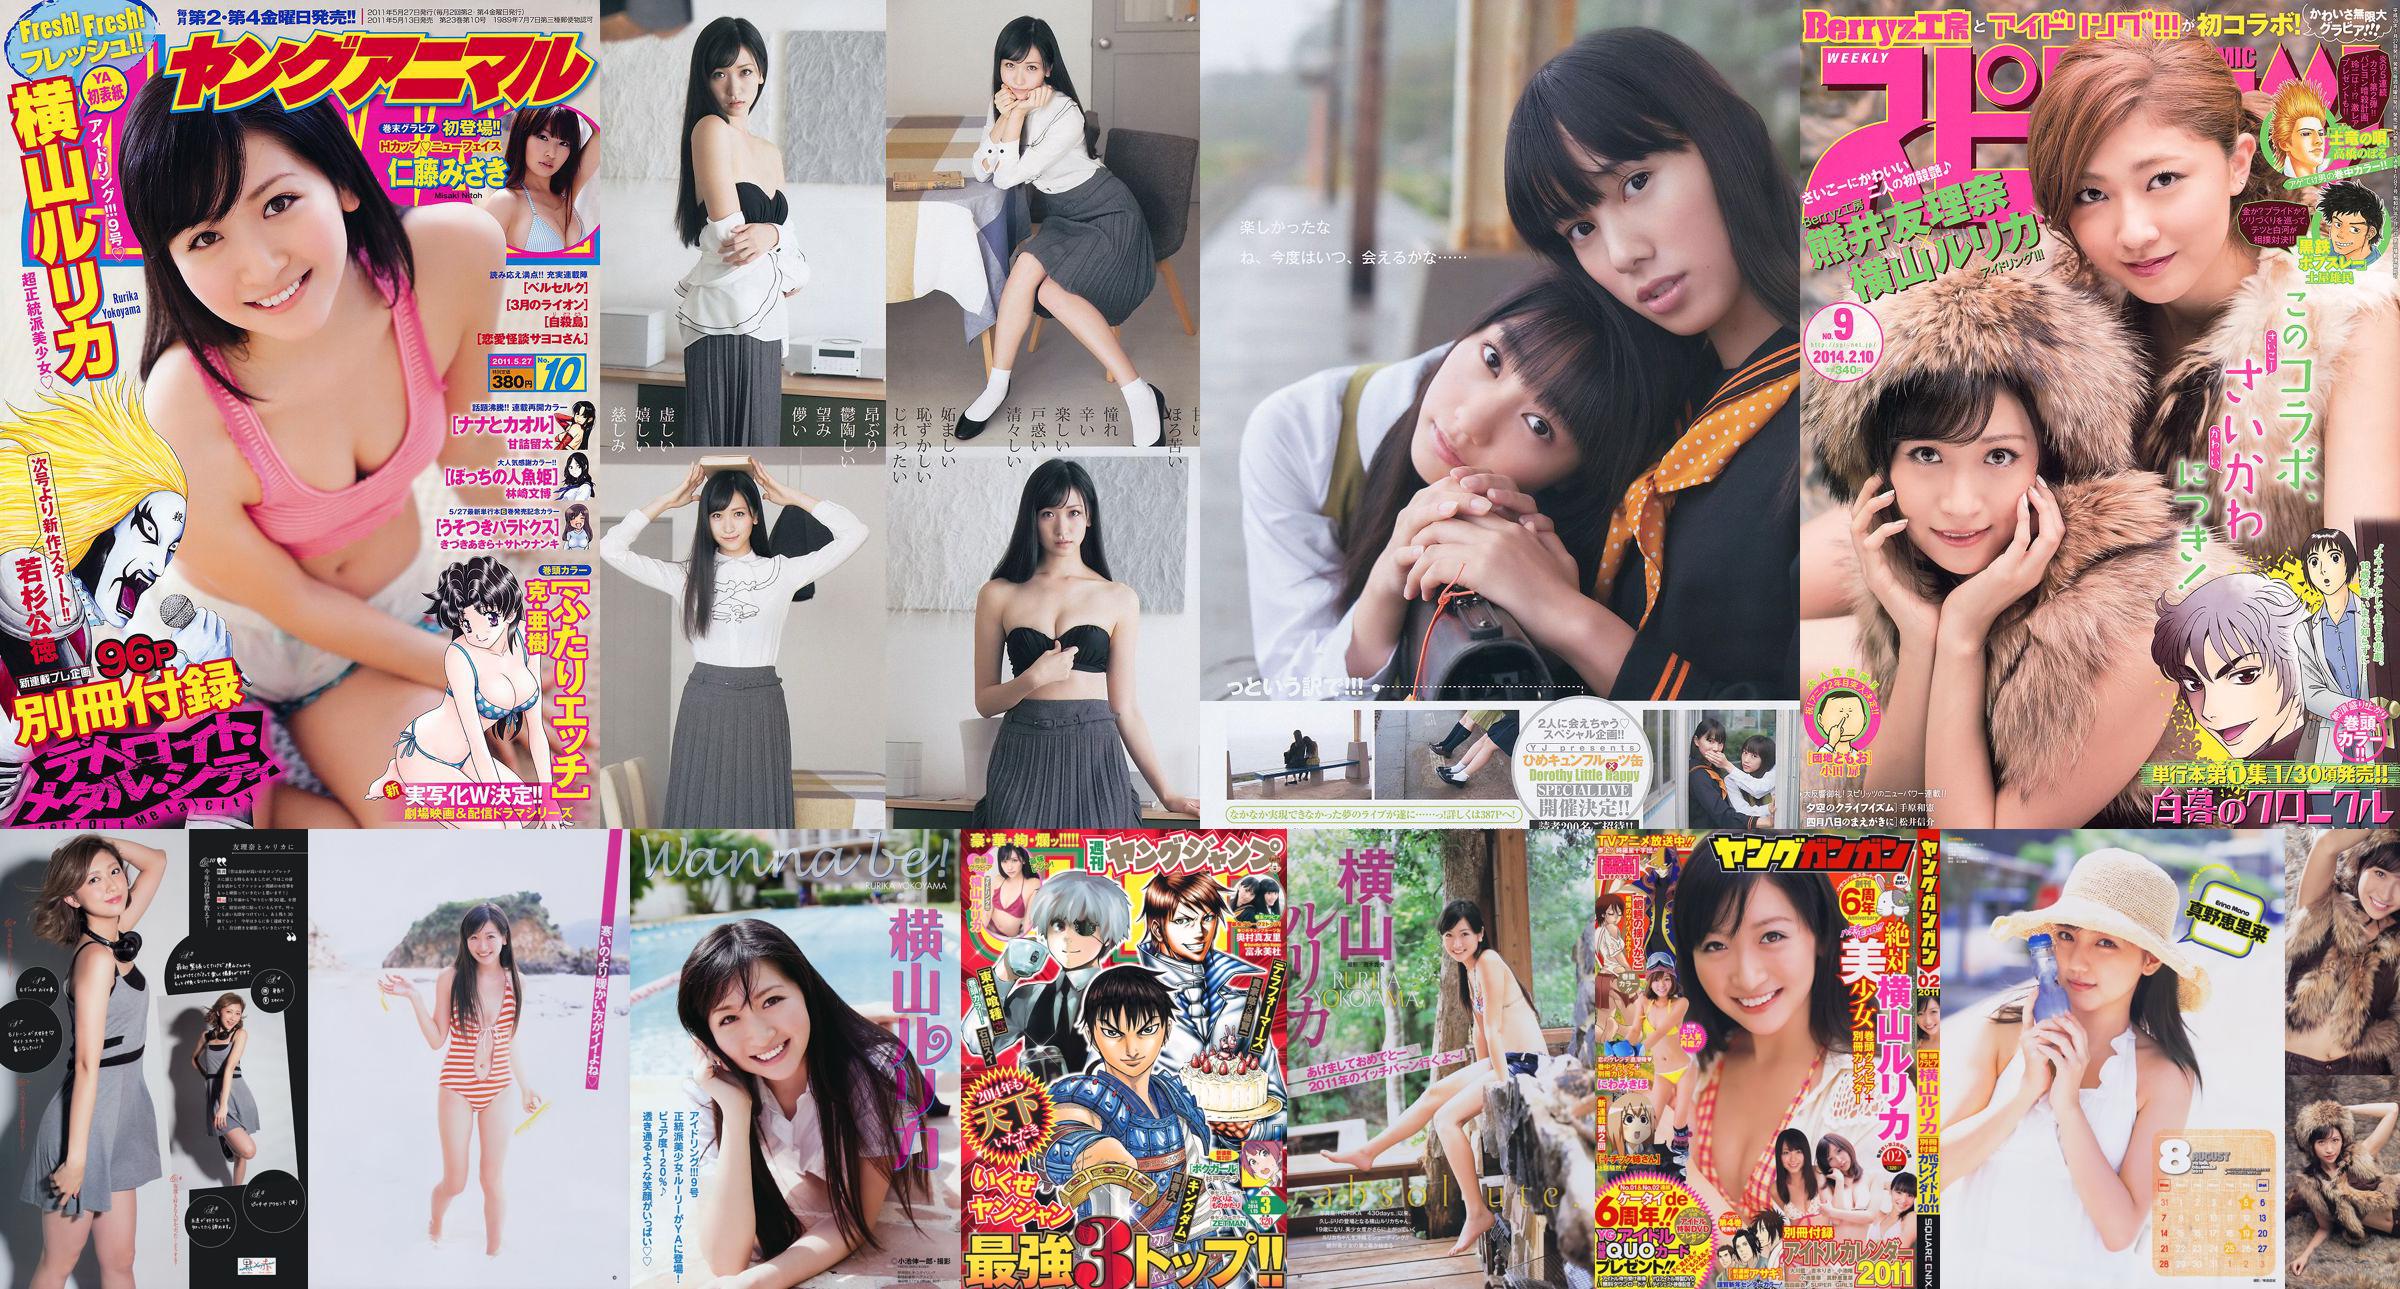 [Semangat Komik Besar Mingguan] Yokoyama Rurika Kumai Yurina 2014 Majalah Foto No. 09 No.726e26 Halaman 1